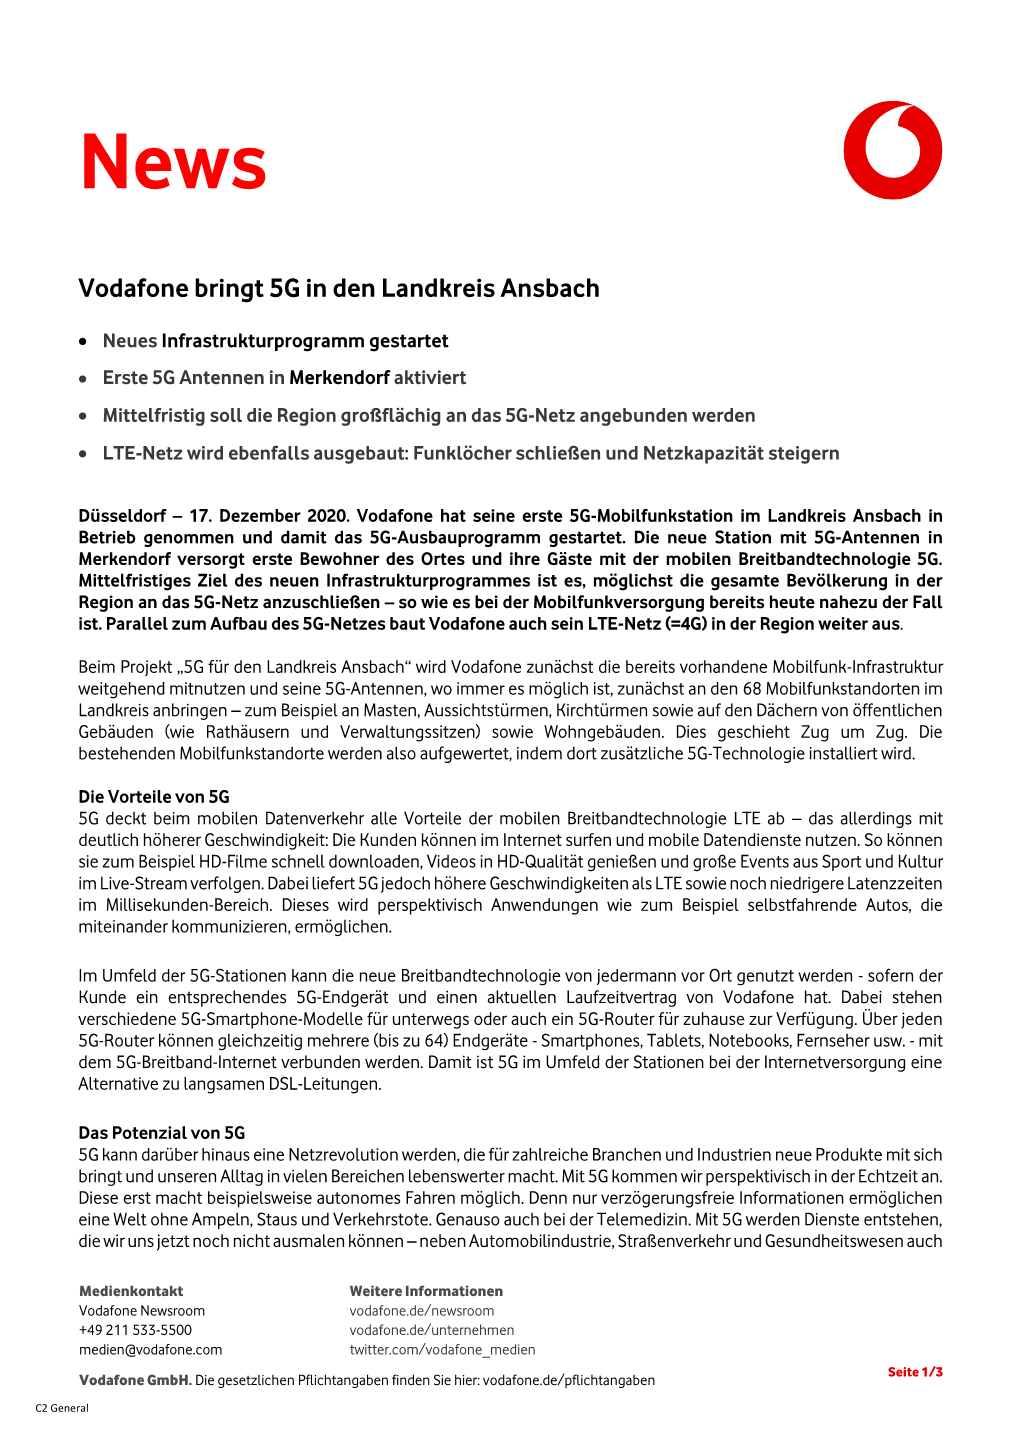 Vodafone Bringt 5G in Den Landkreis Ansbach